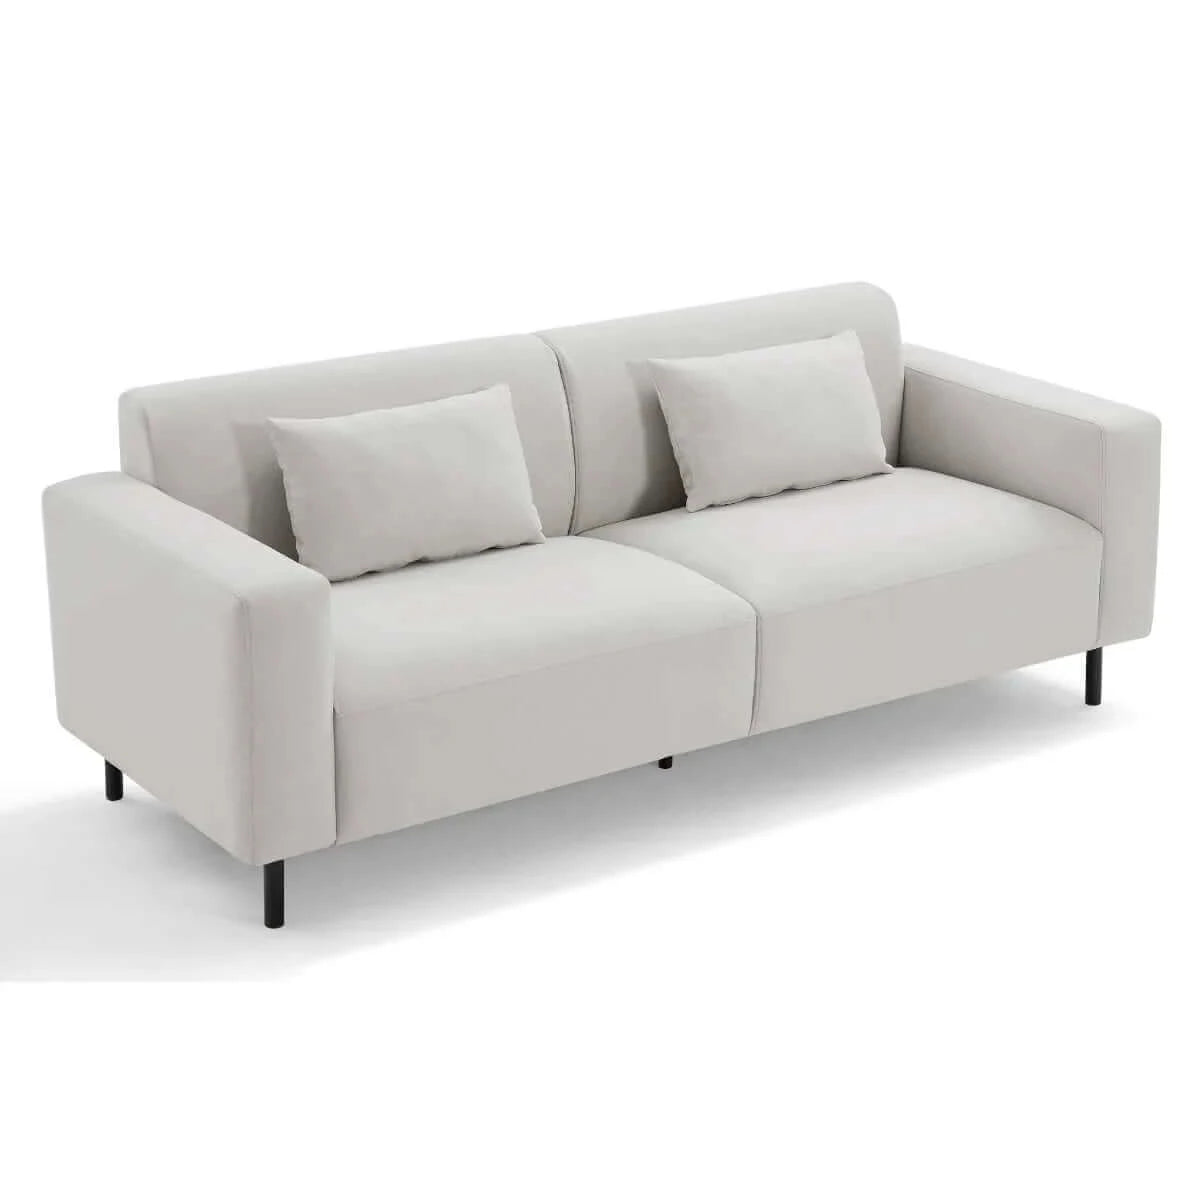 Buy johan 3 seater sofa - upinteriors-Upinteriors